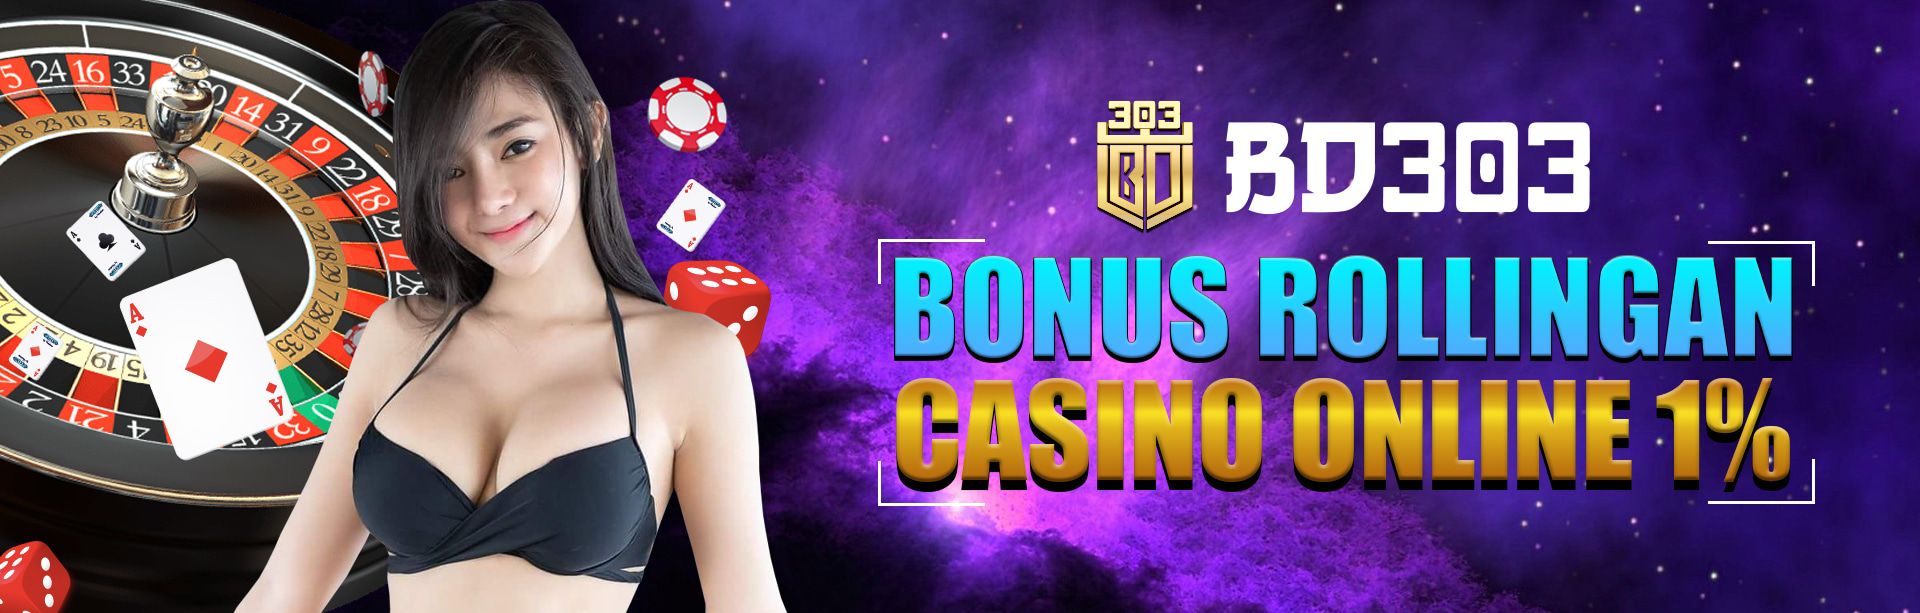 Situs Resmi Casino Online